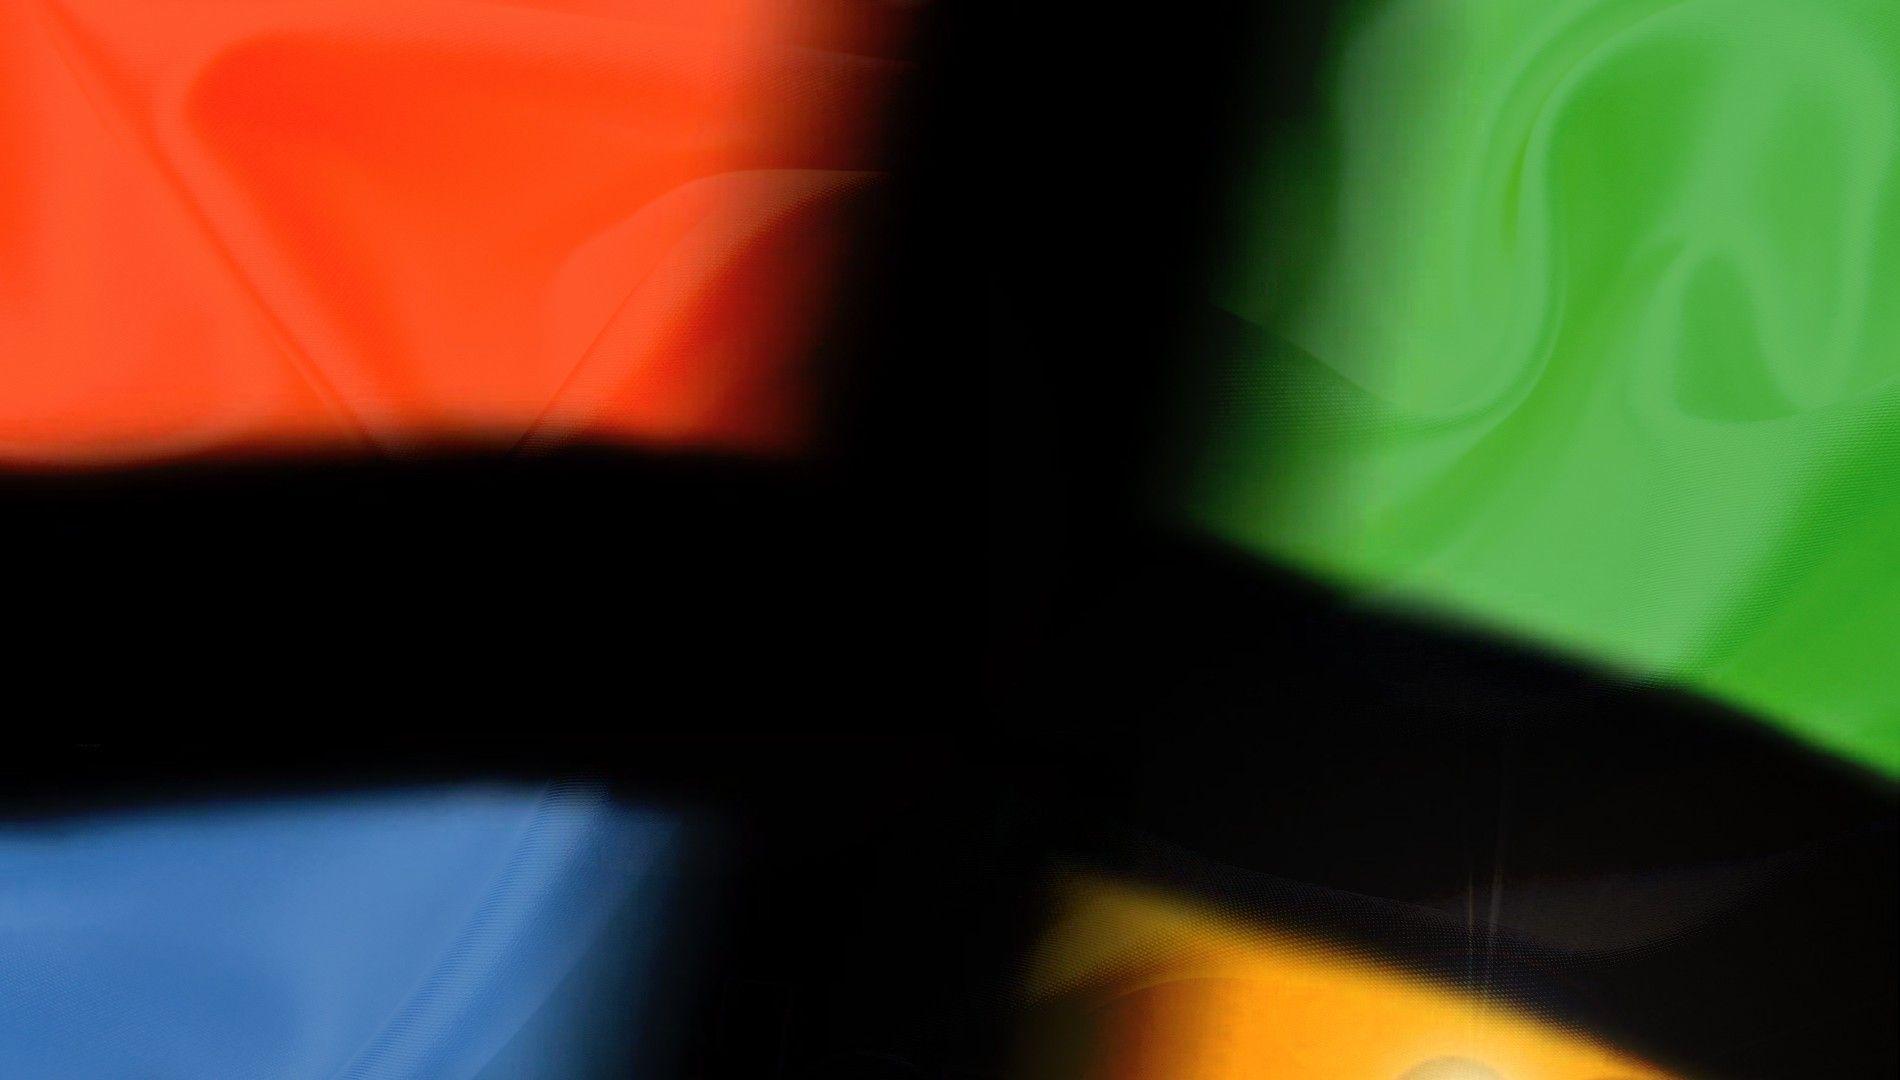 Black Windows Red Logo - Wallpaper : black, red, logo, green, yellow, blue, orange ...